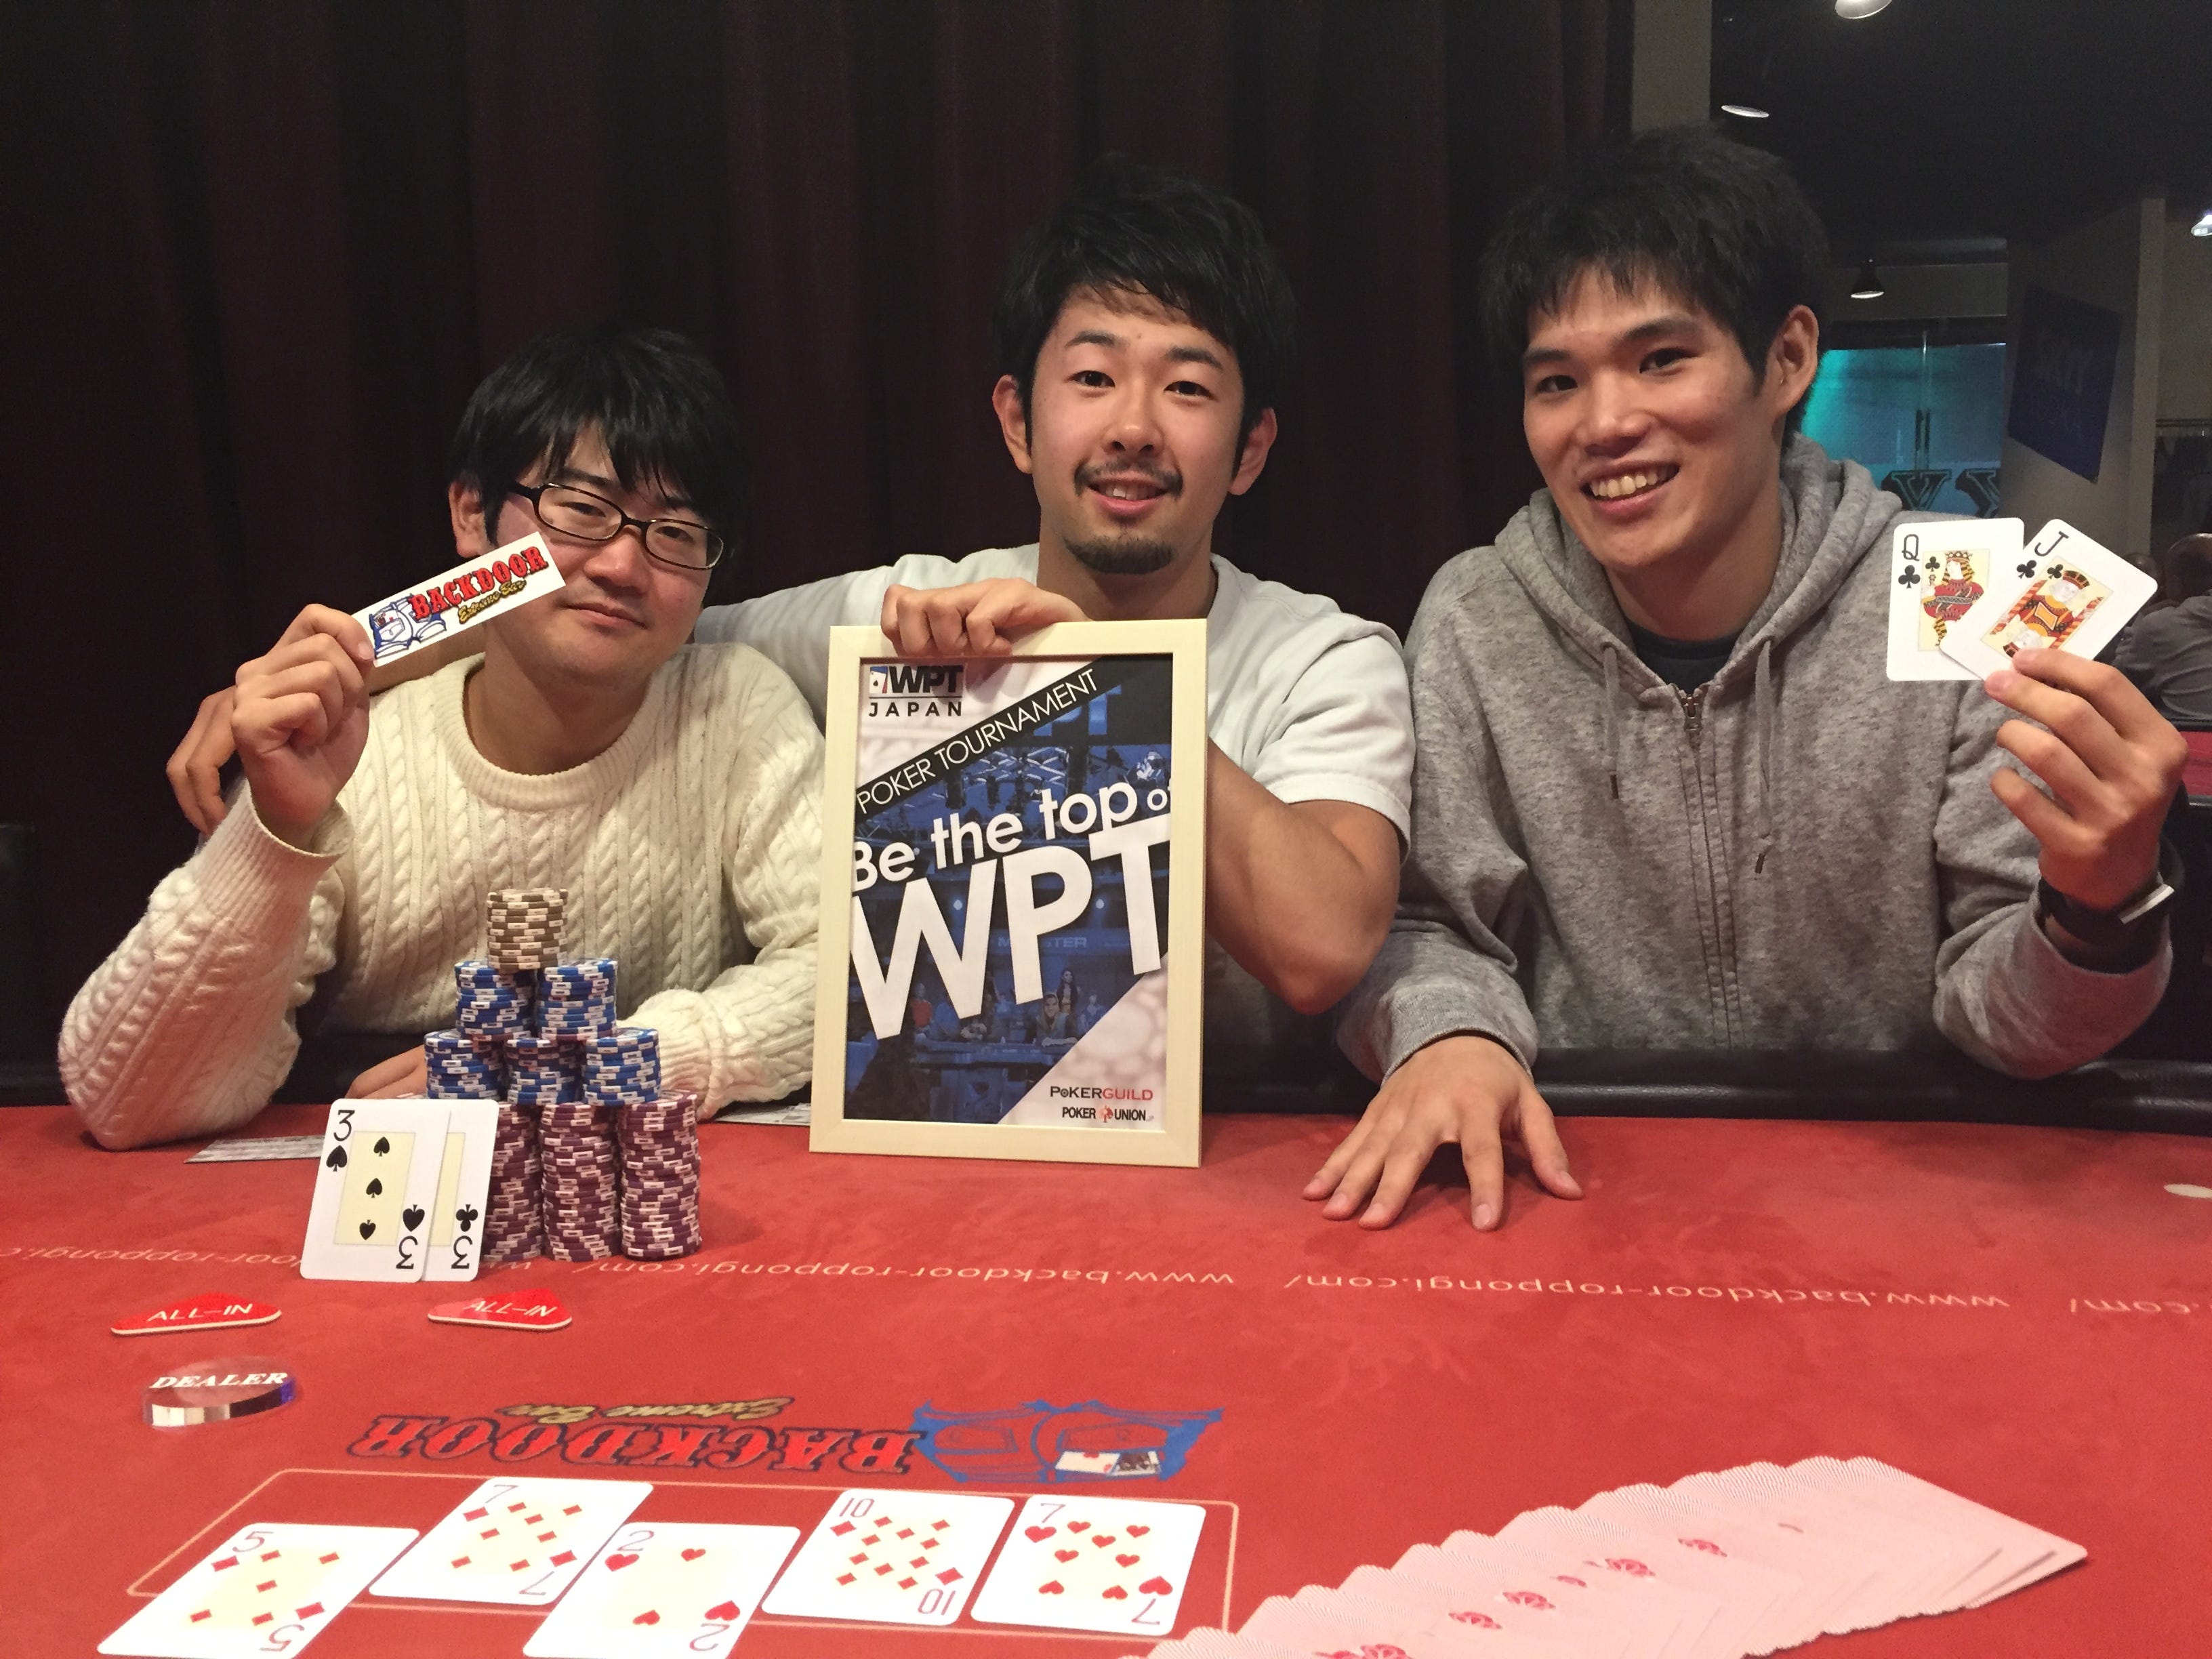 ポーカー素人３人組が 半年で日本一 を目指した話 昨年の10月末から 友人２人と 半年間 本気でポーカーを勉強してみようじゃないか By Taichi Ichikawa Medium